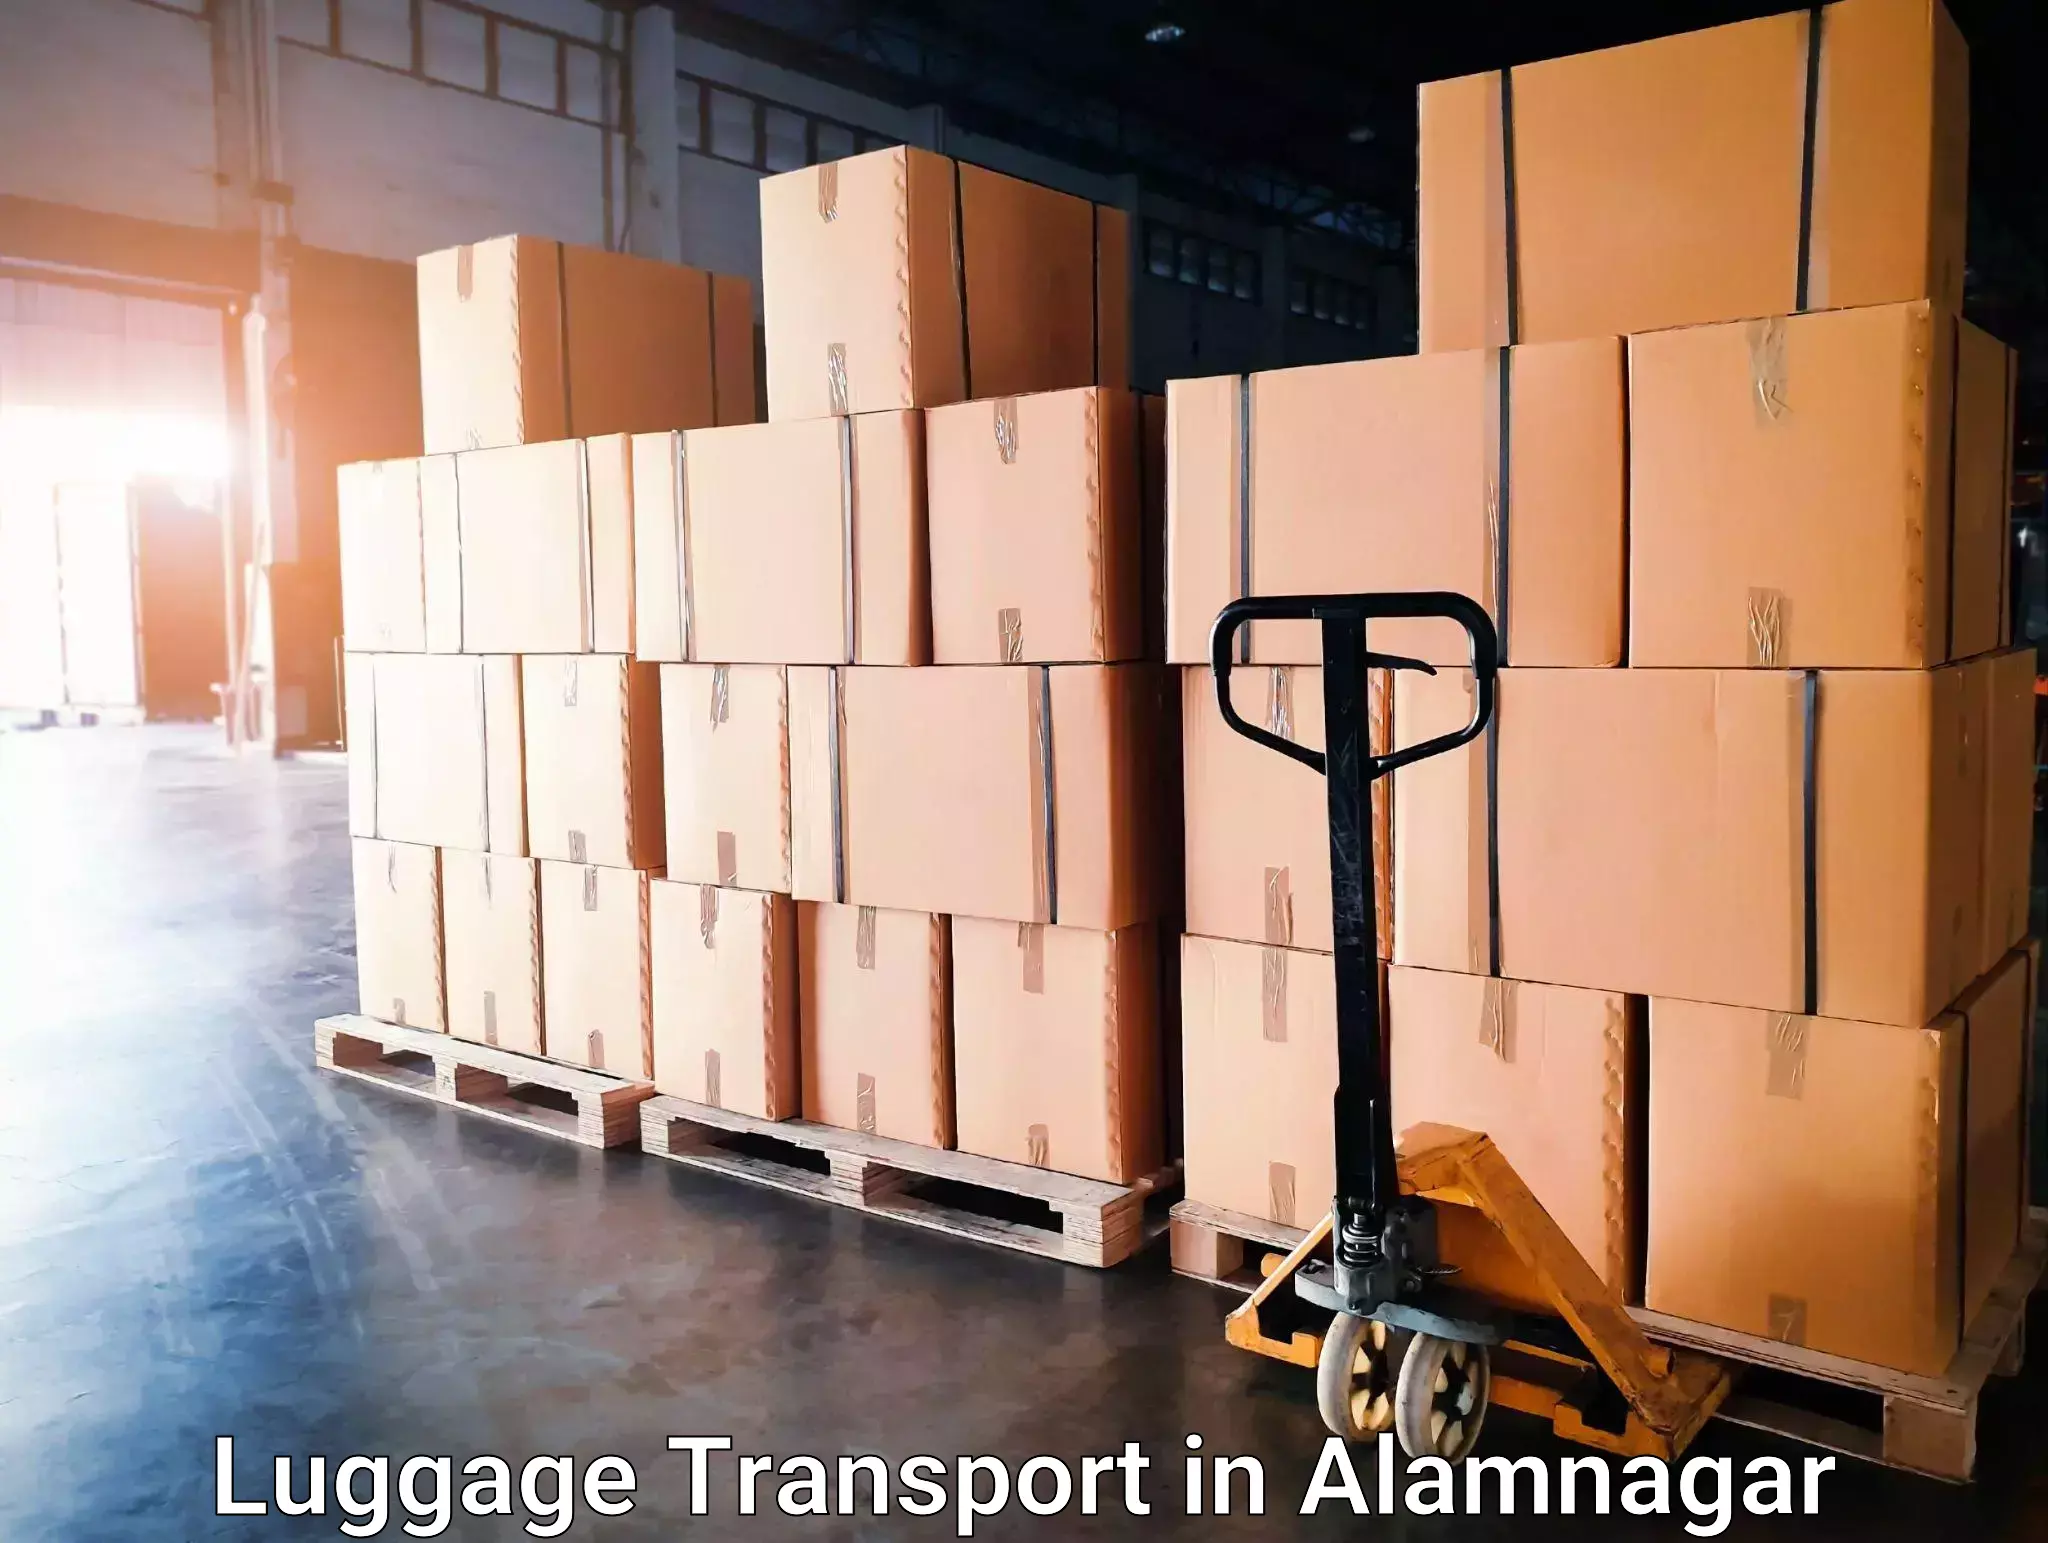 Baggage transport management in Alamnagar